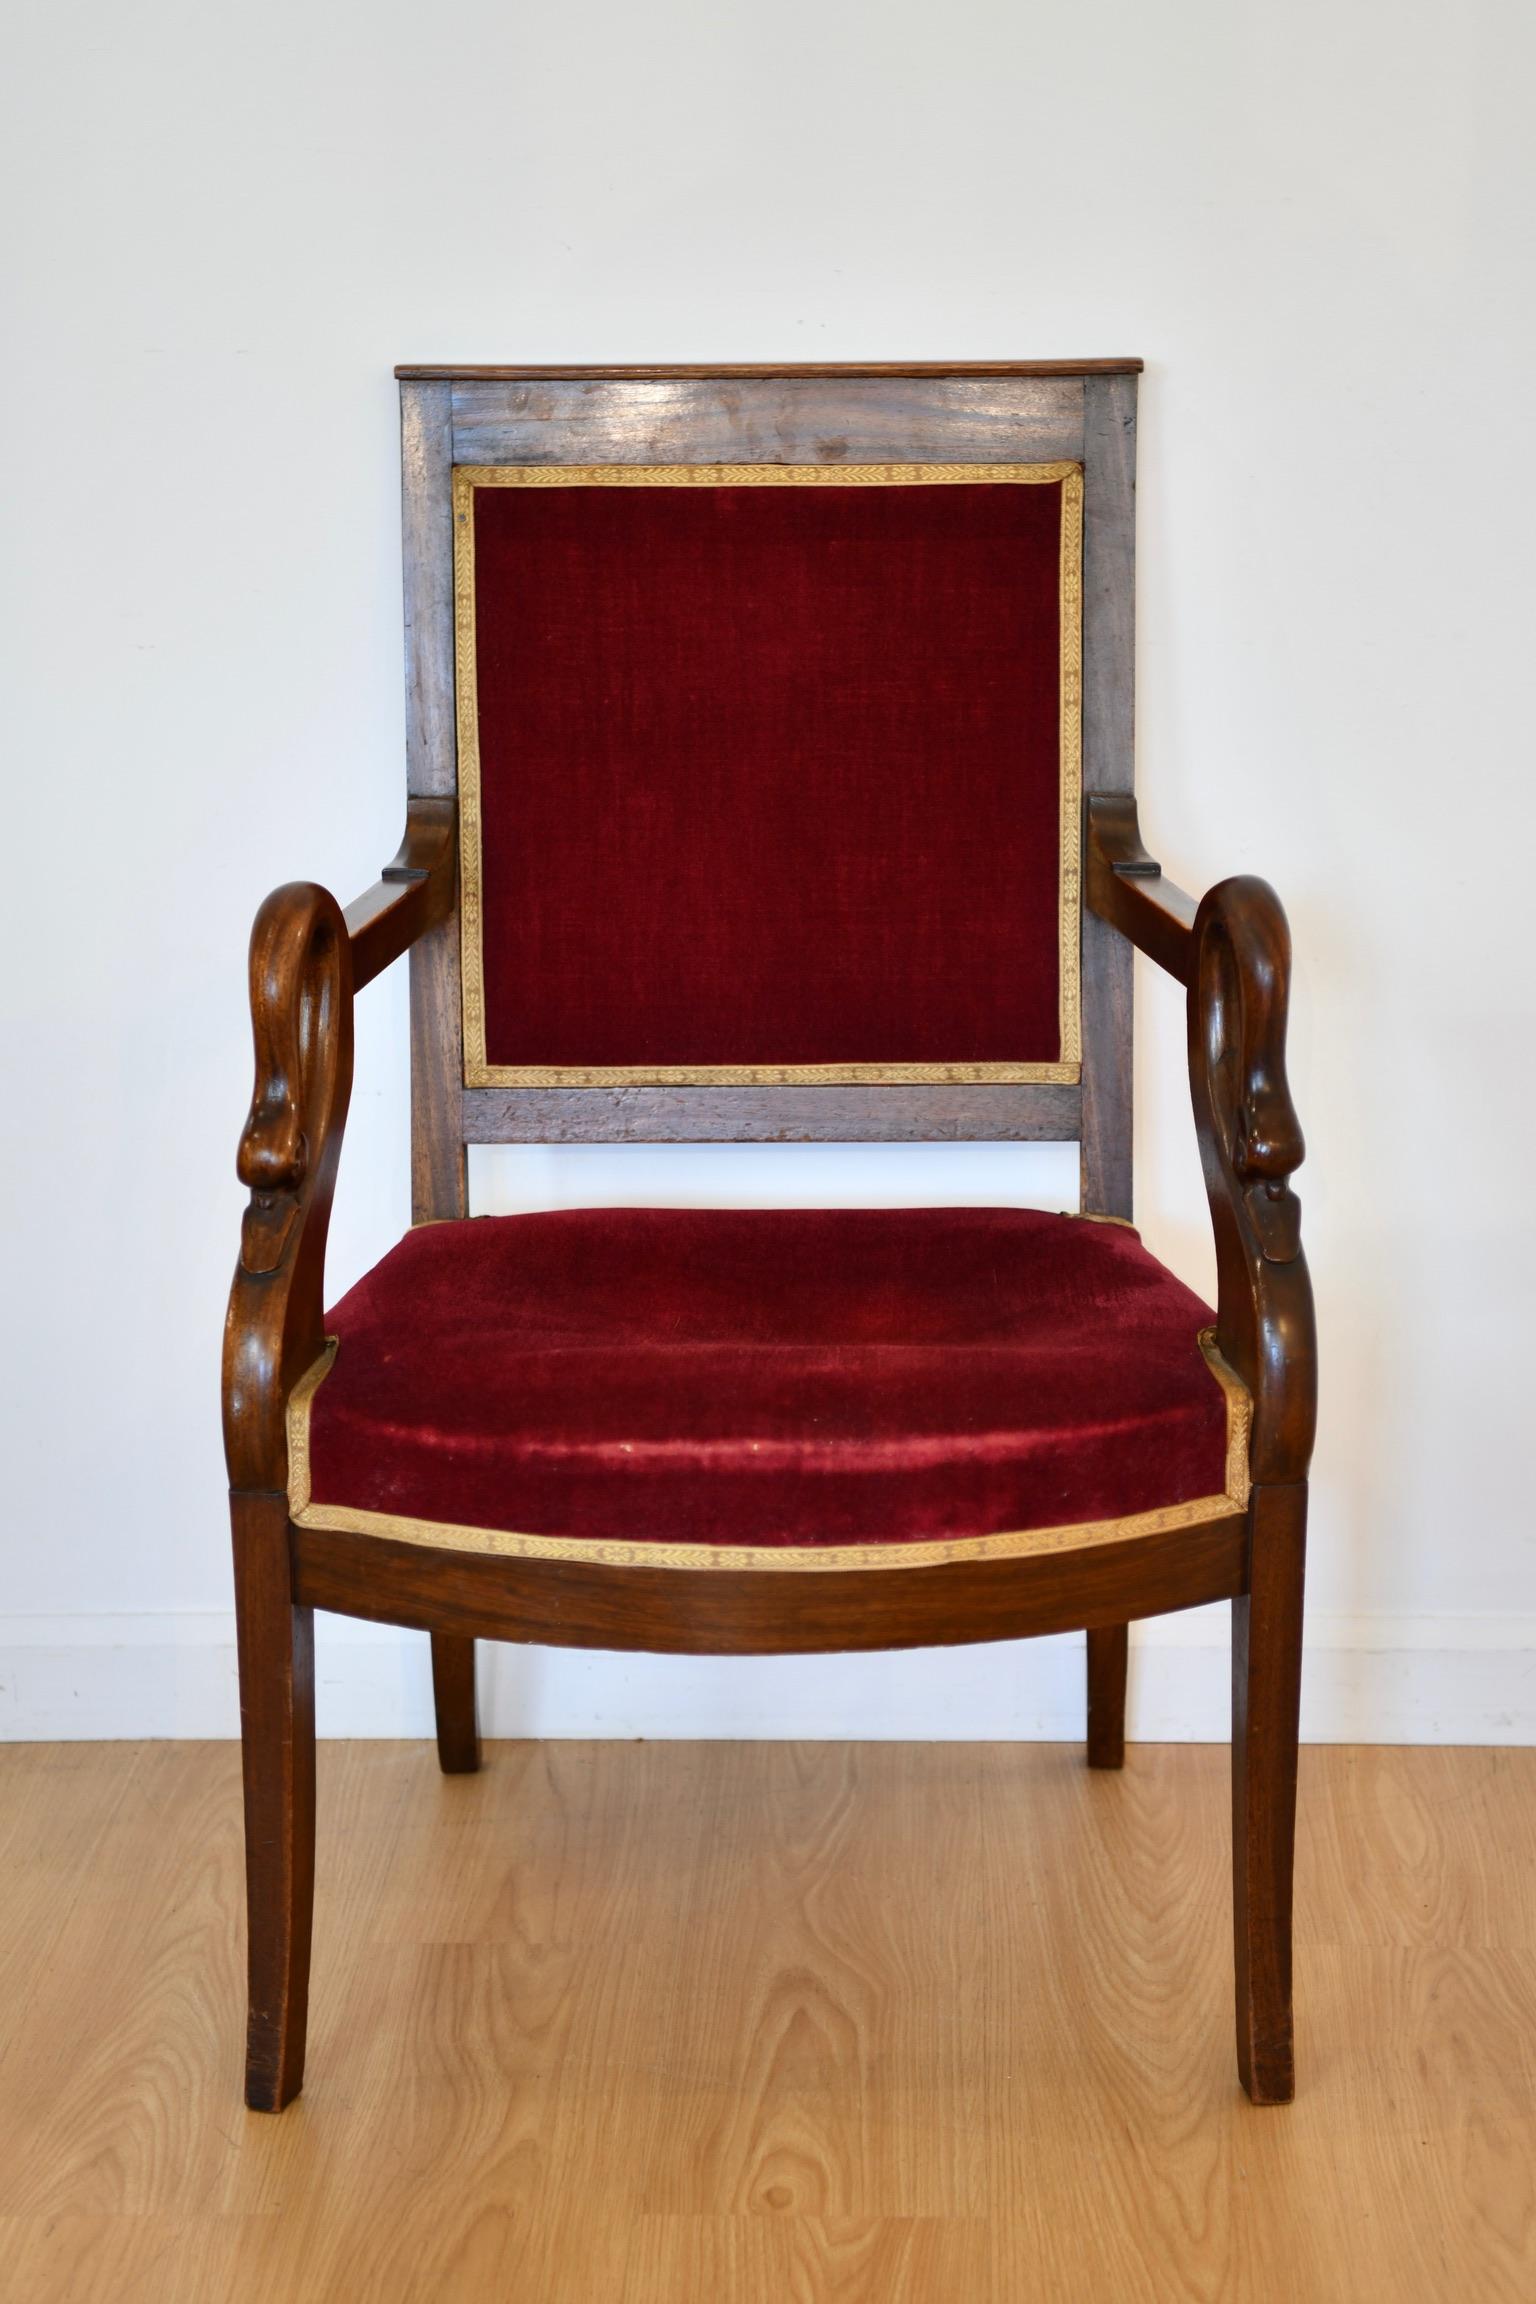 Französischer geschnitzter Mahagoni-Sessel mit Schwanenköpfen, um 1930. Zwei verfügbar, einzeln verkauft. Passend dazu ist eine Chaiselongue erhältlich. Suken-Sitze; benötigen möglicherweise neue Federn. Abmessungen: 35 